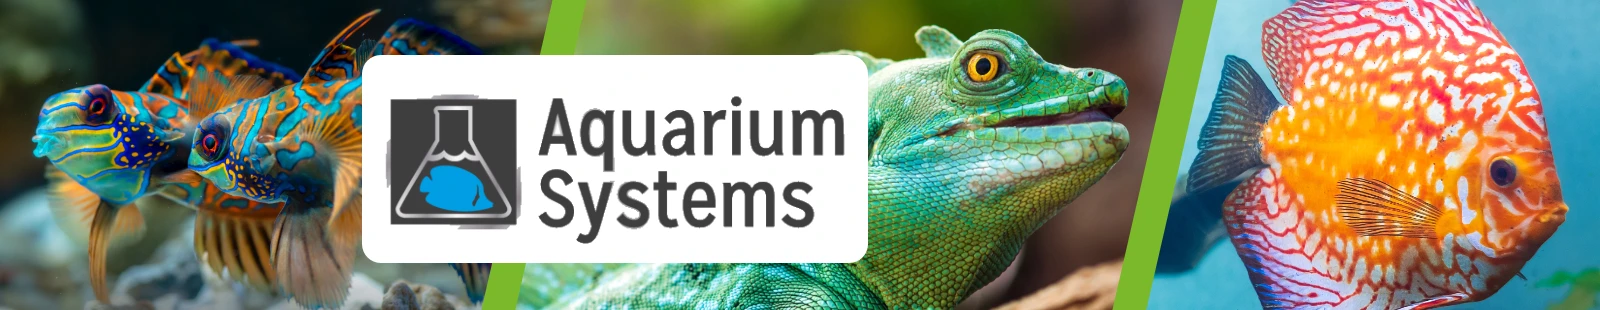 aquarium_systems_Banner.webp